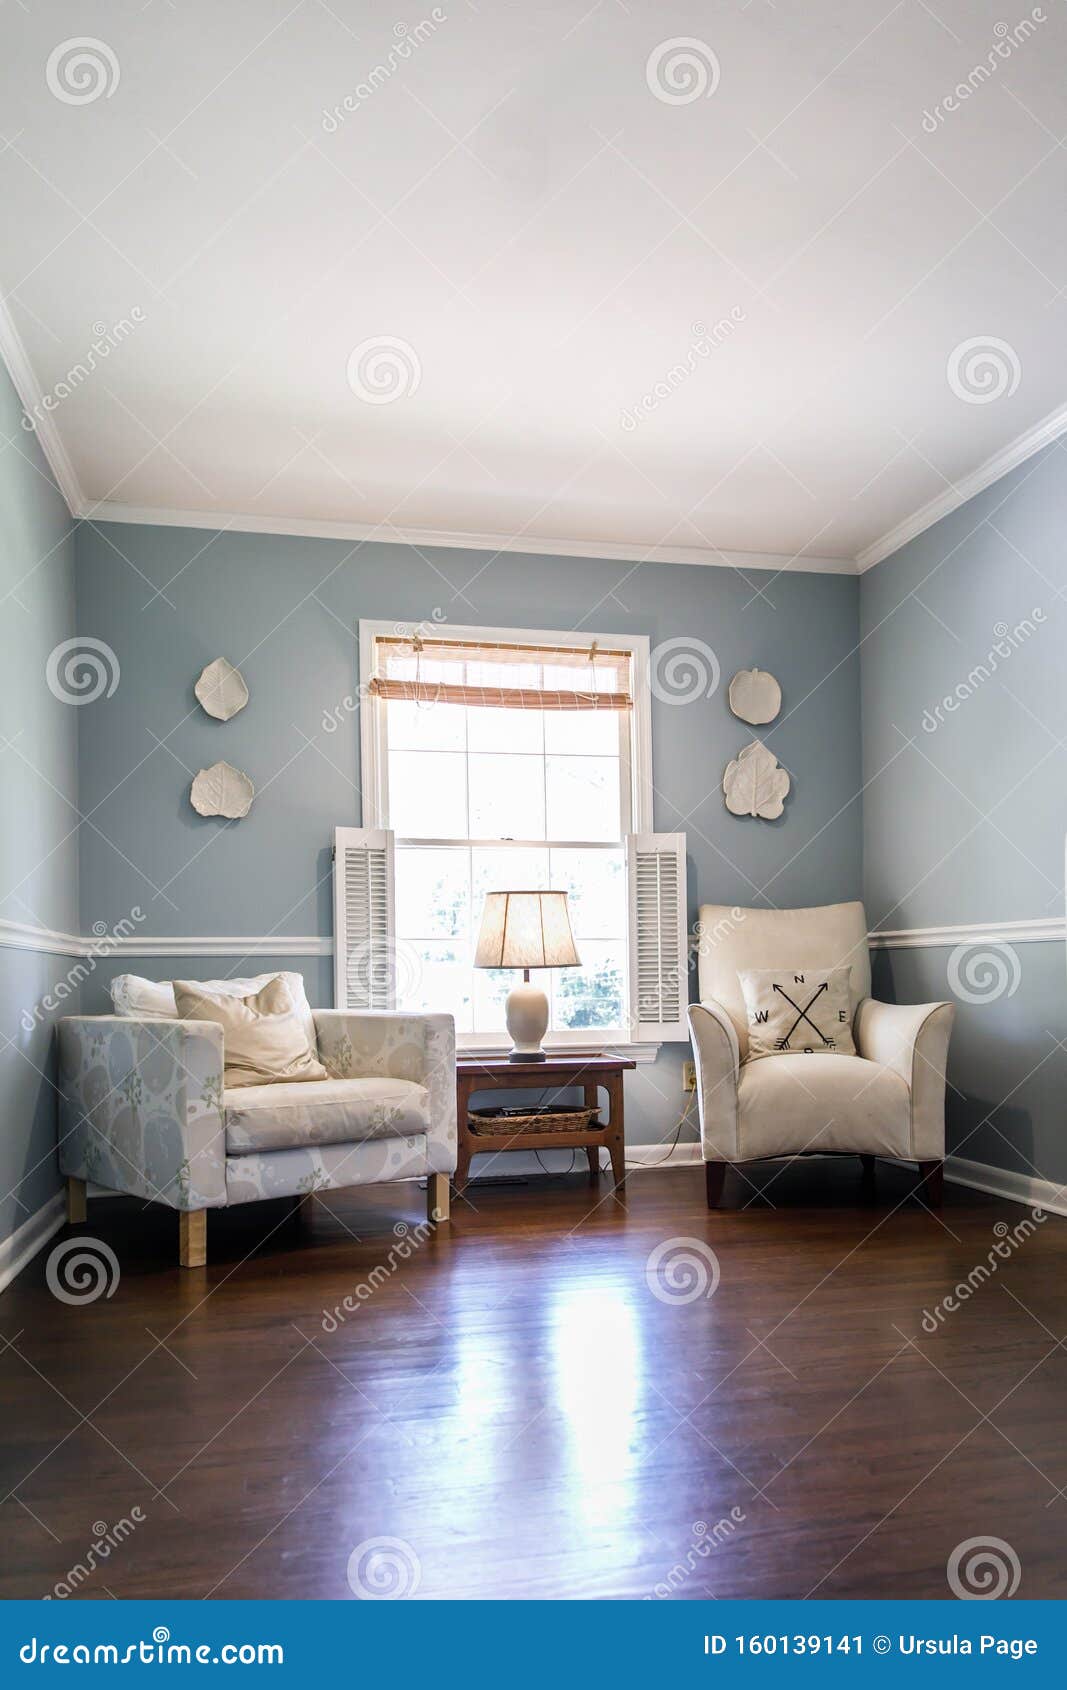 Salón Azul Claro Con Dos De Color Crema Y Platos En Pared Imagen de archivo - Imagen de robos, inquilino: 160139141